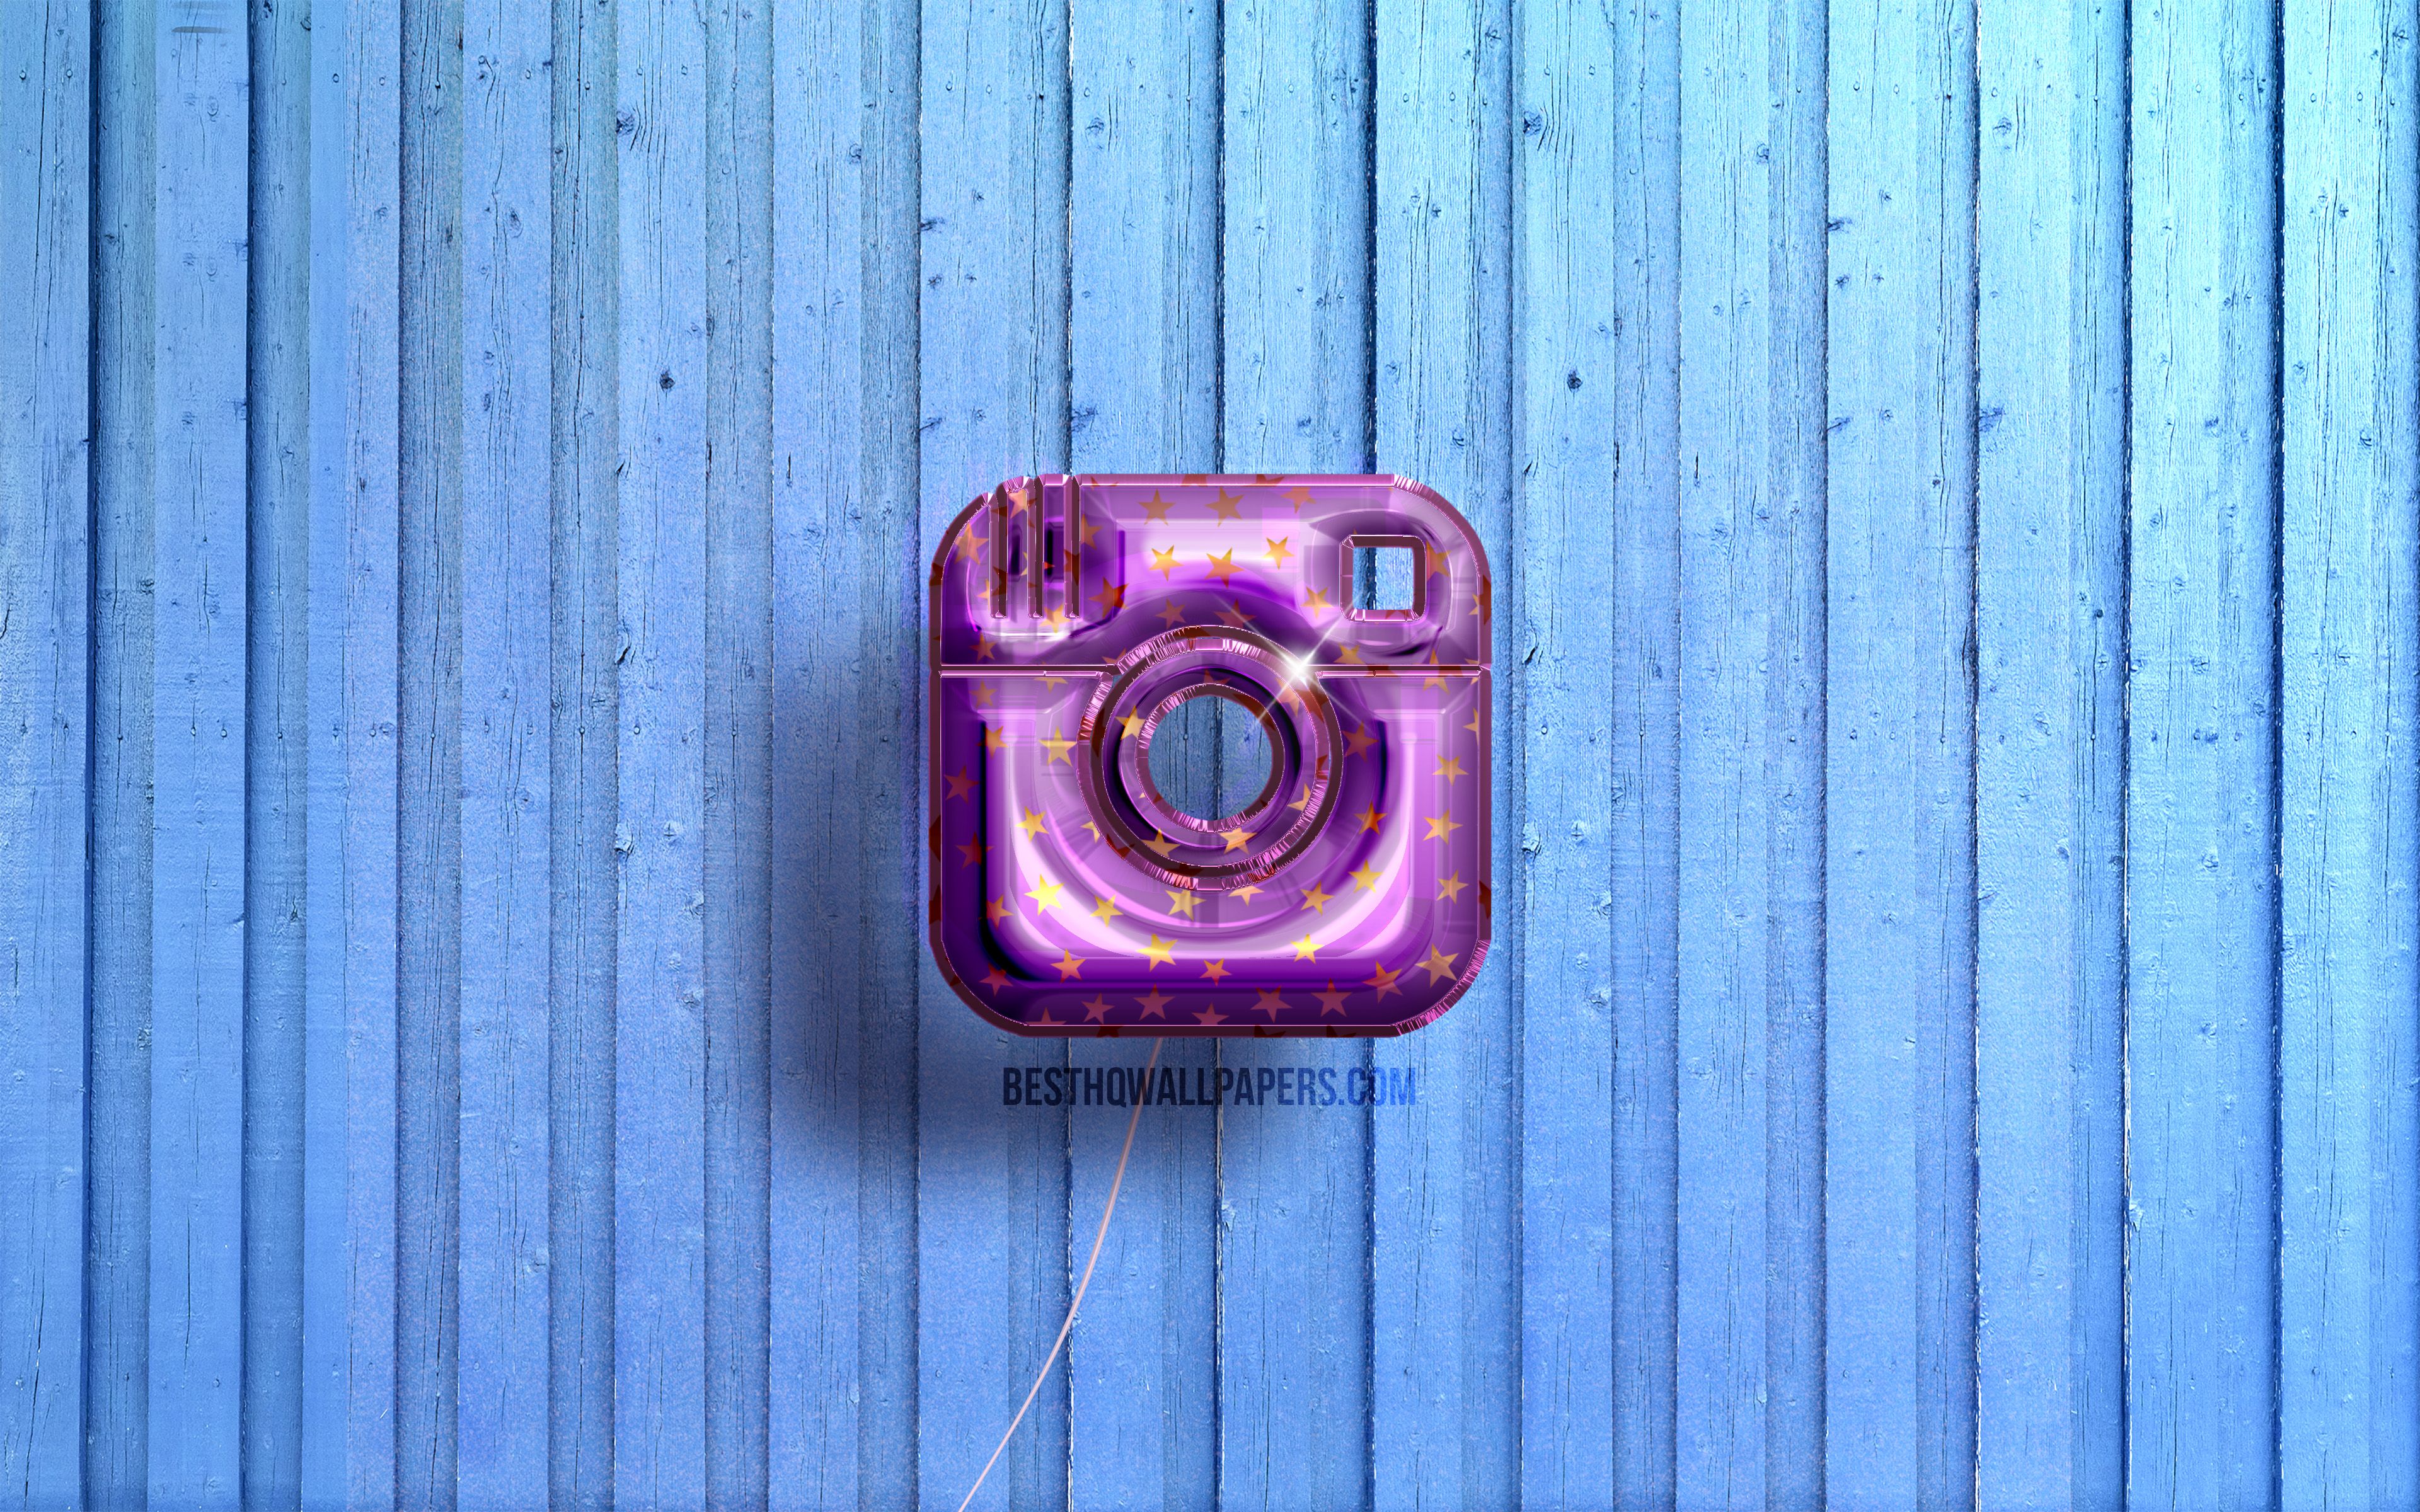 Instagram 4k Wallpapers - Bạn thích trang trí màn hình điện thoại của mình bằng những bức ảnh nền đẹp và độc đáo? Hãy khám phá Instagram 4k Wallpapers - một trang chia sẻ những bức ảnh nền chất lượng cao trên nền tảng Instagram. Với độ phân giải 4K cực kỳ sắc nét, những bức ảnh trên đây sẽ làm bạn ấn tượng ngay từ cái nhìn đầu tiên.